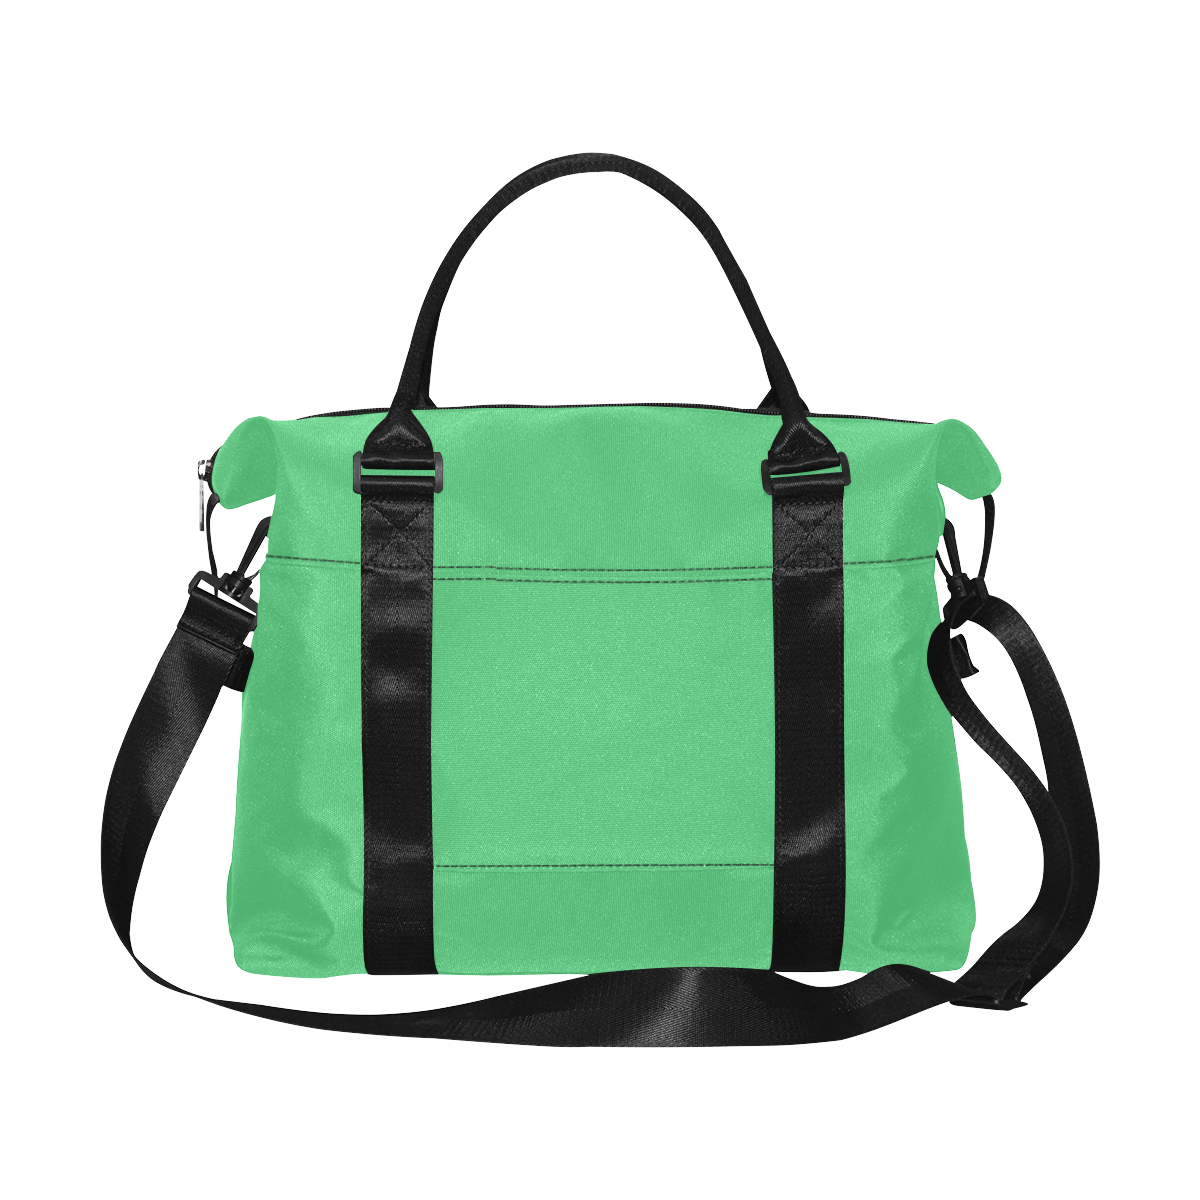 color Paris green Large Capacity Duffle Bag (Model 1715)